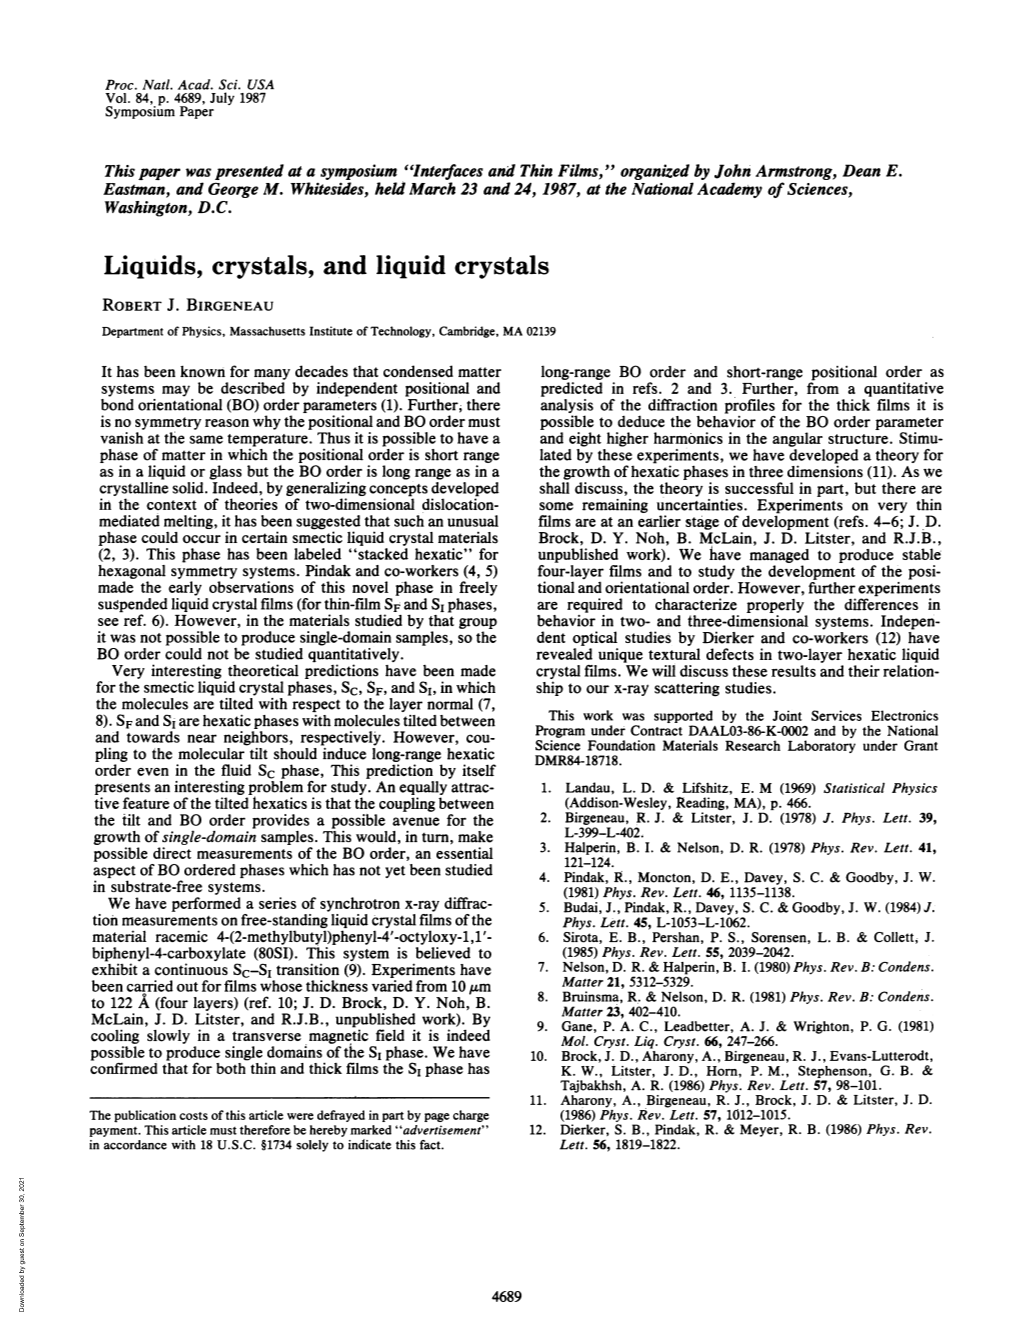 Liquids, Crystals, and Liquid Crystals ROBERT J